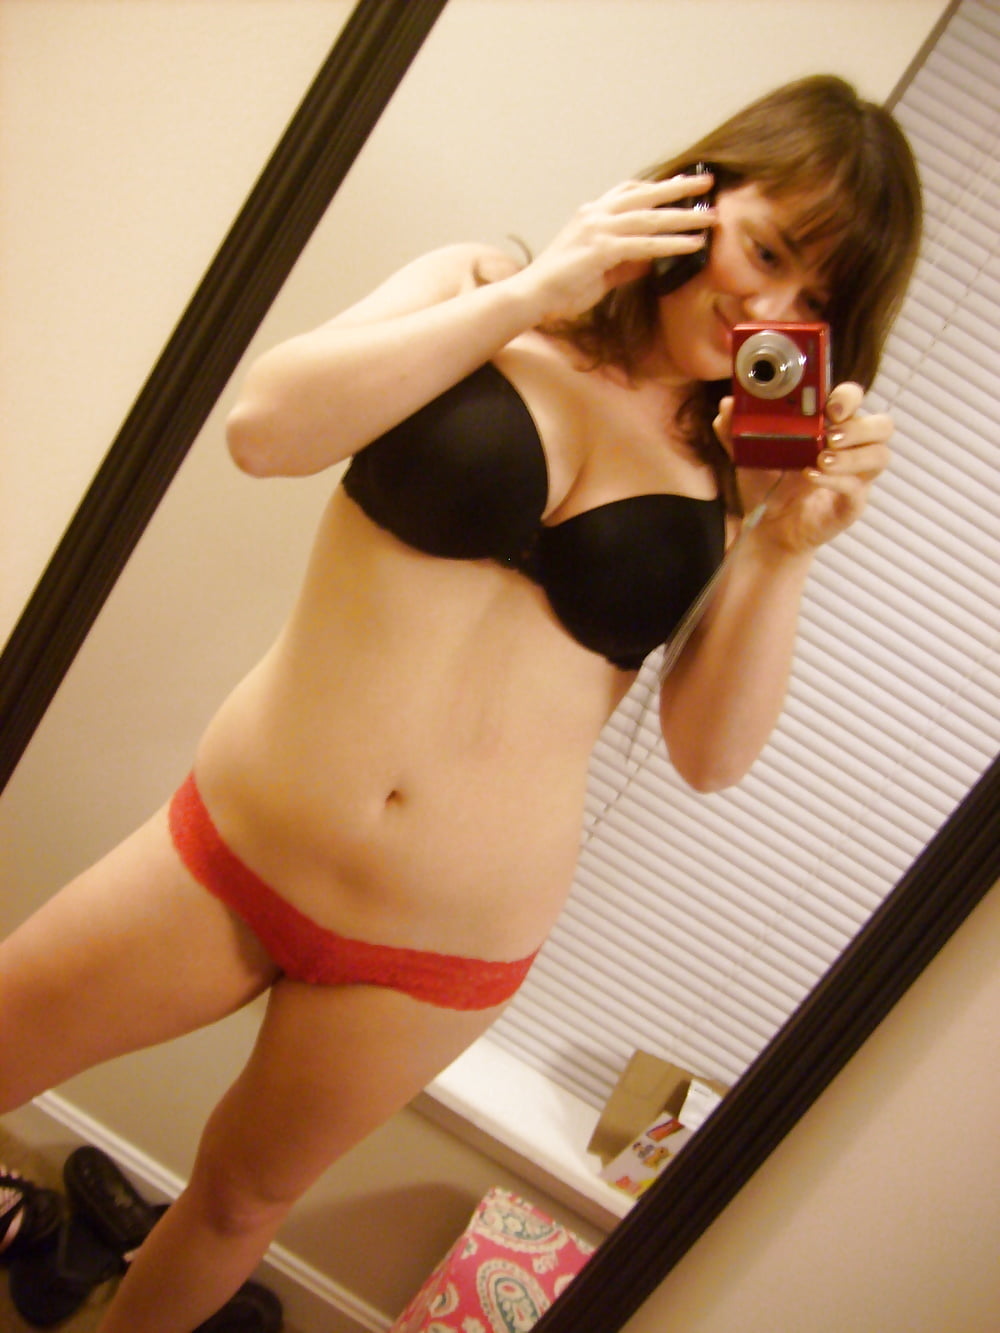 Big tits teen posing in panties and nude (5/28)